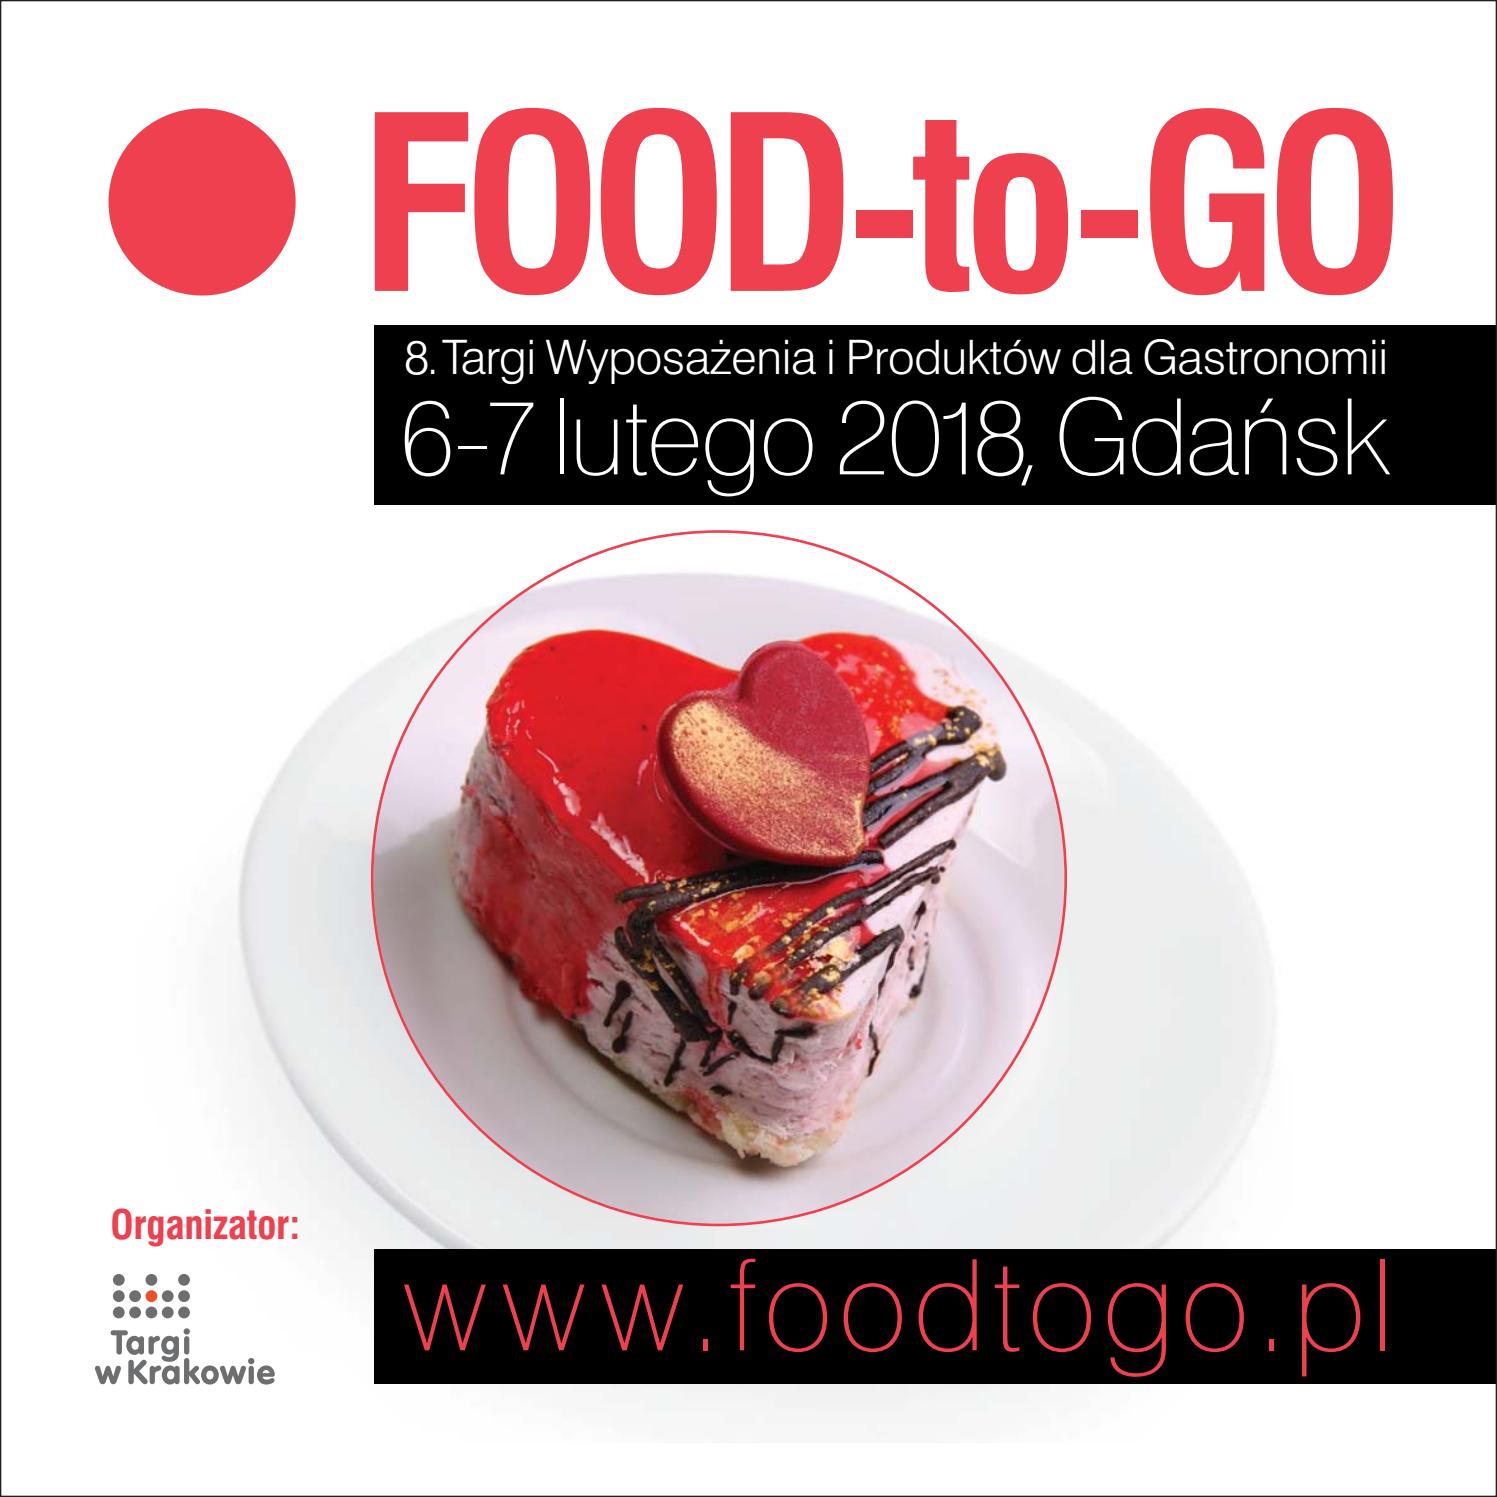 8. Targi FOOD-to-GO w Gdańsku